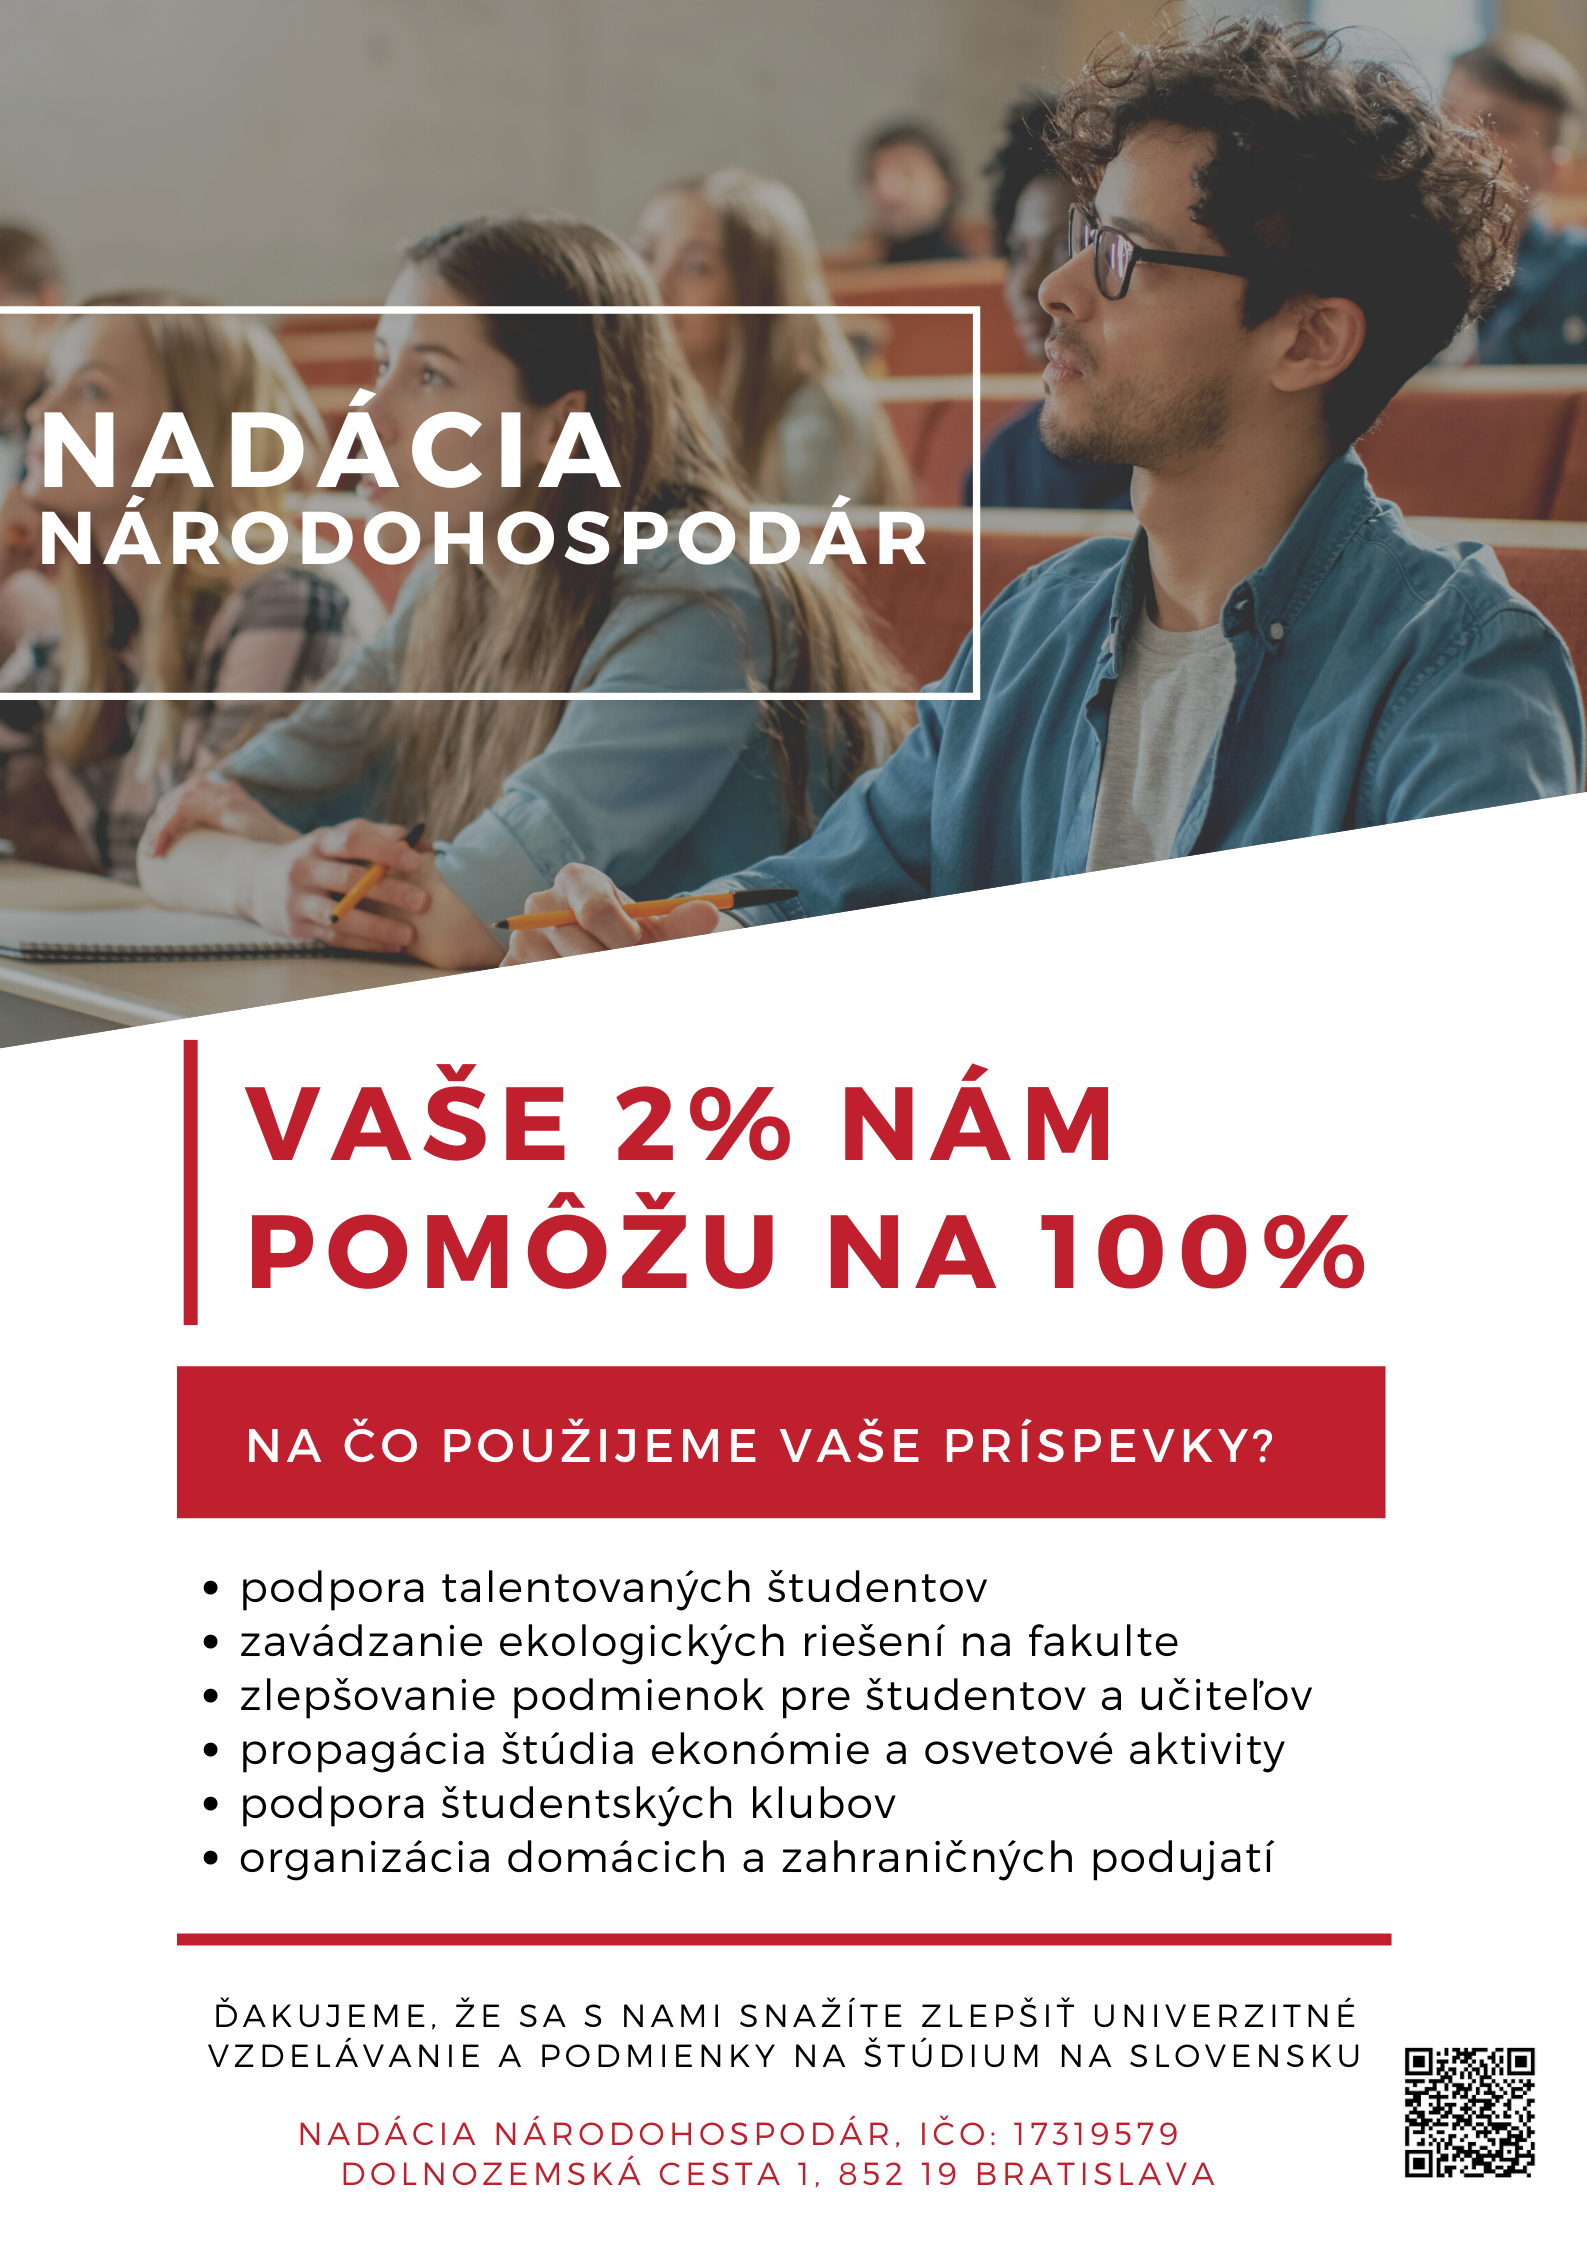 Nadacia poster